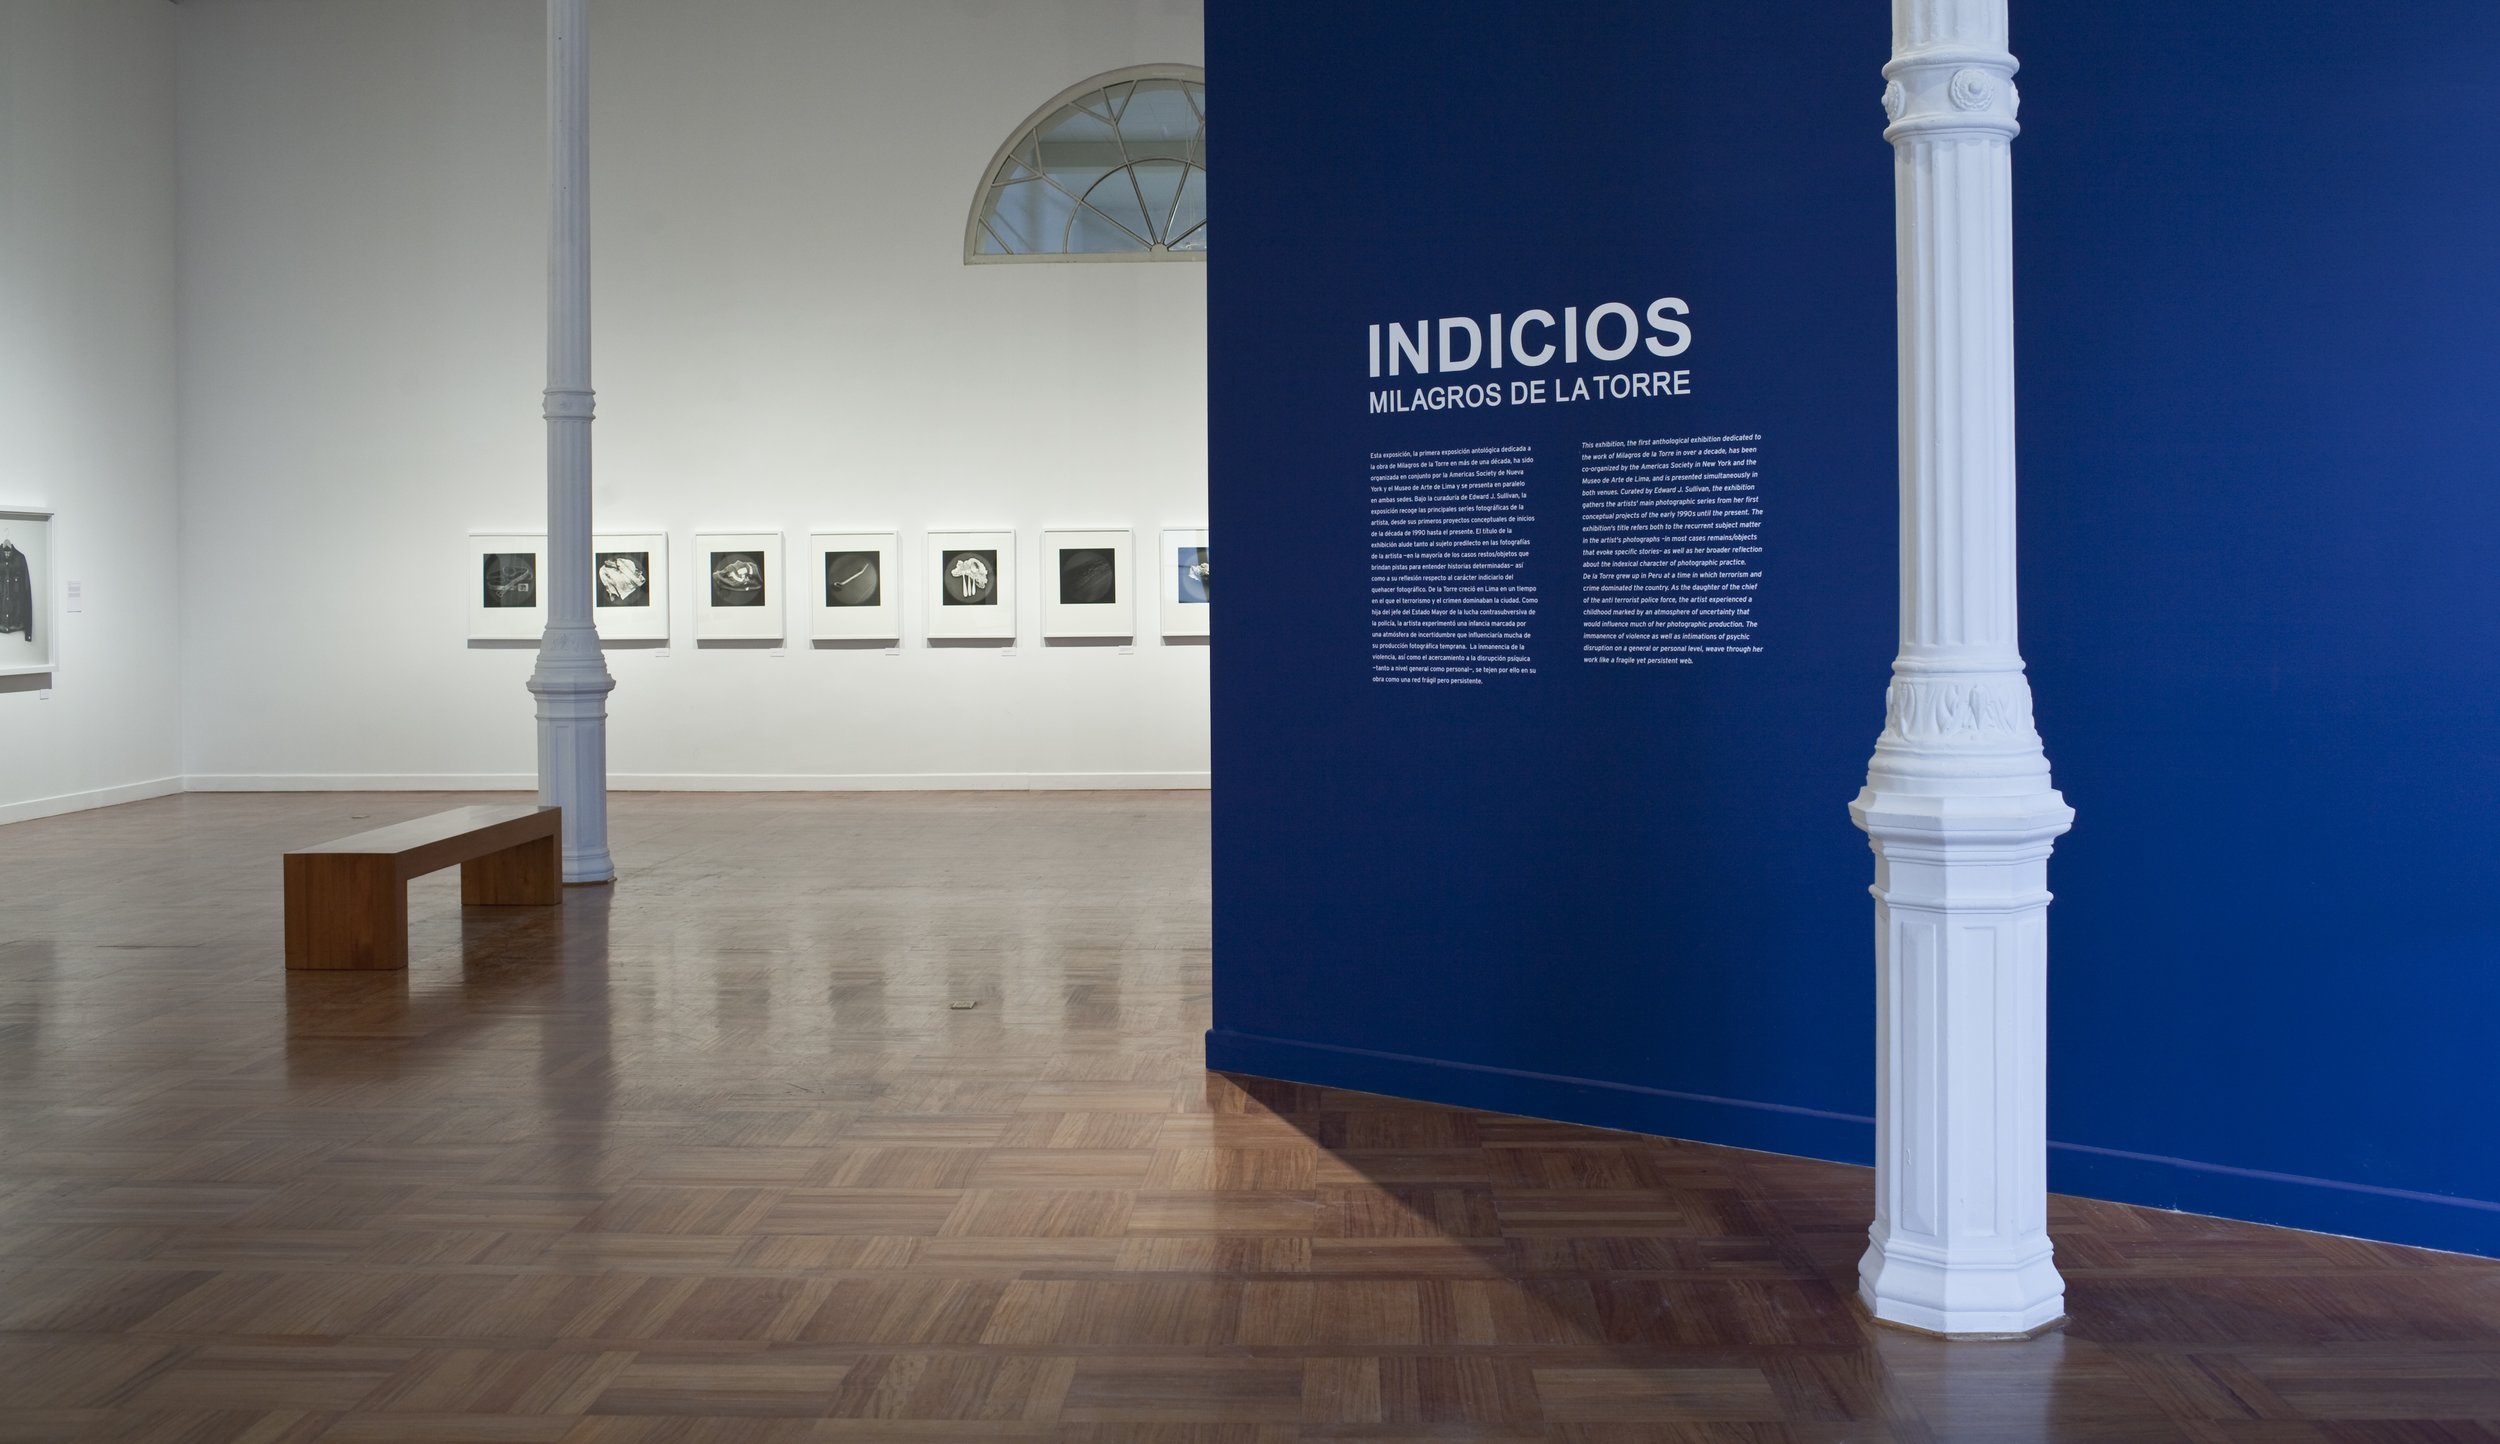   INDICIOS, 2012   Curator: Edward J. Sullivan  Museo de Arte de Lima, MALI.  